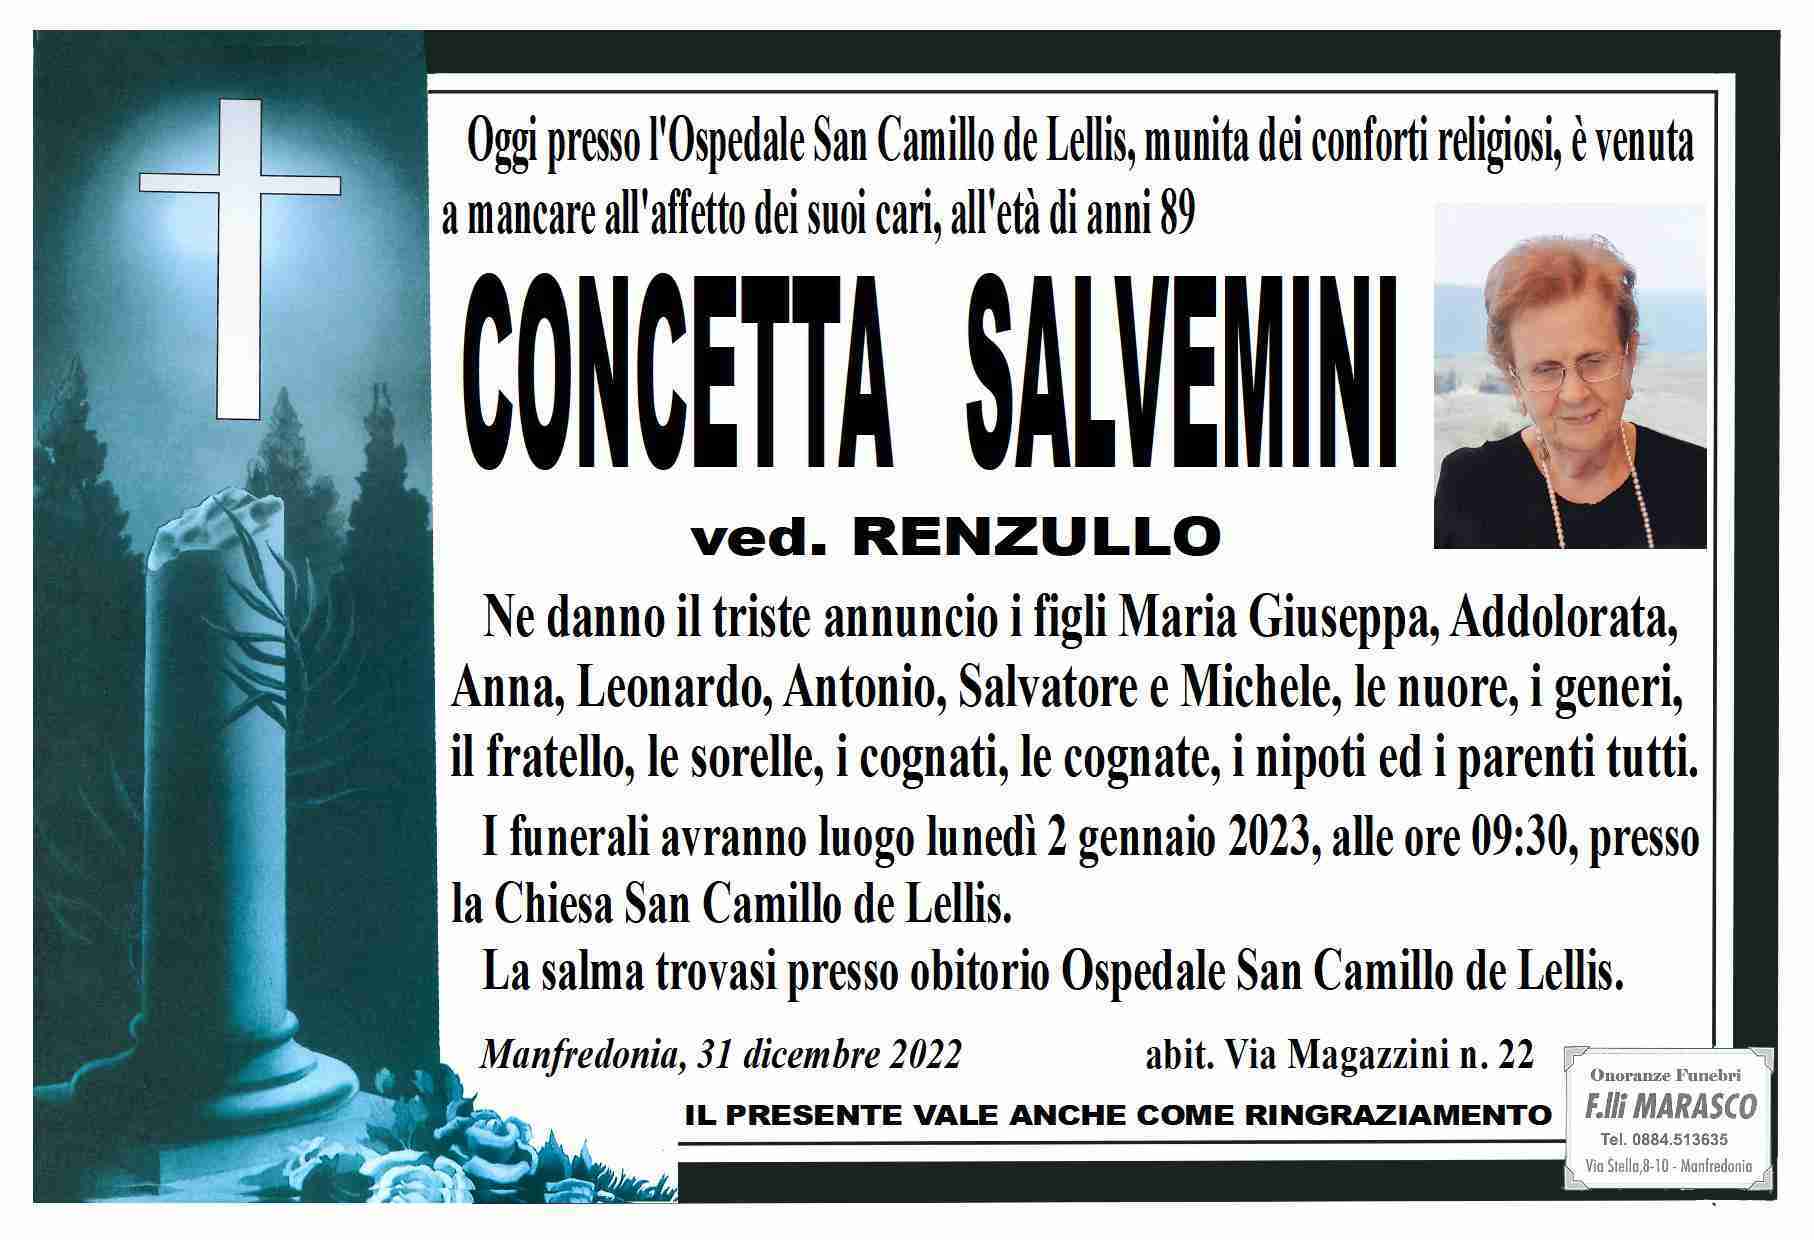 Concetta Salvemini